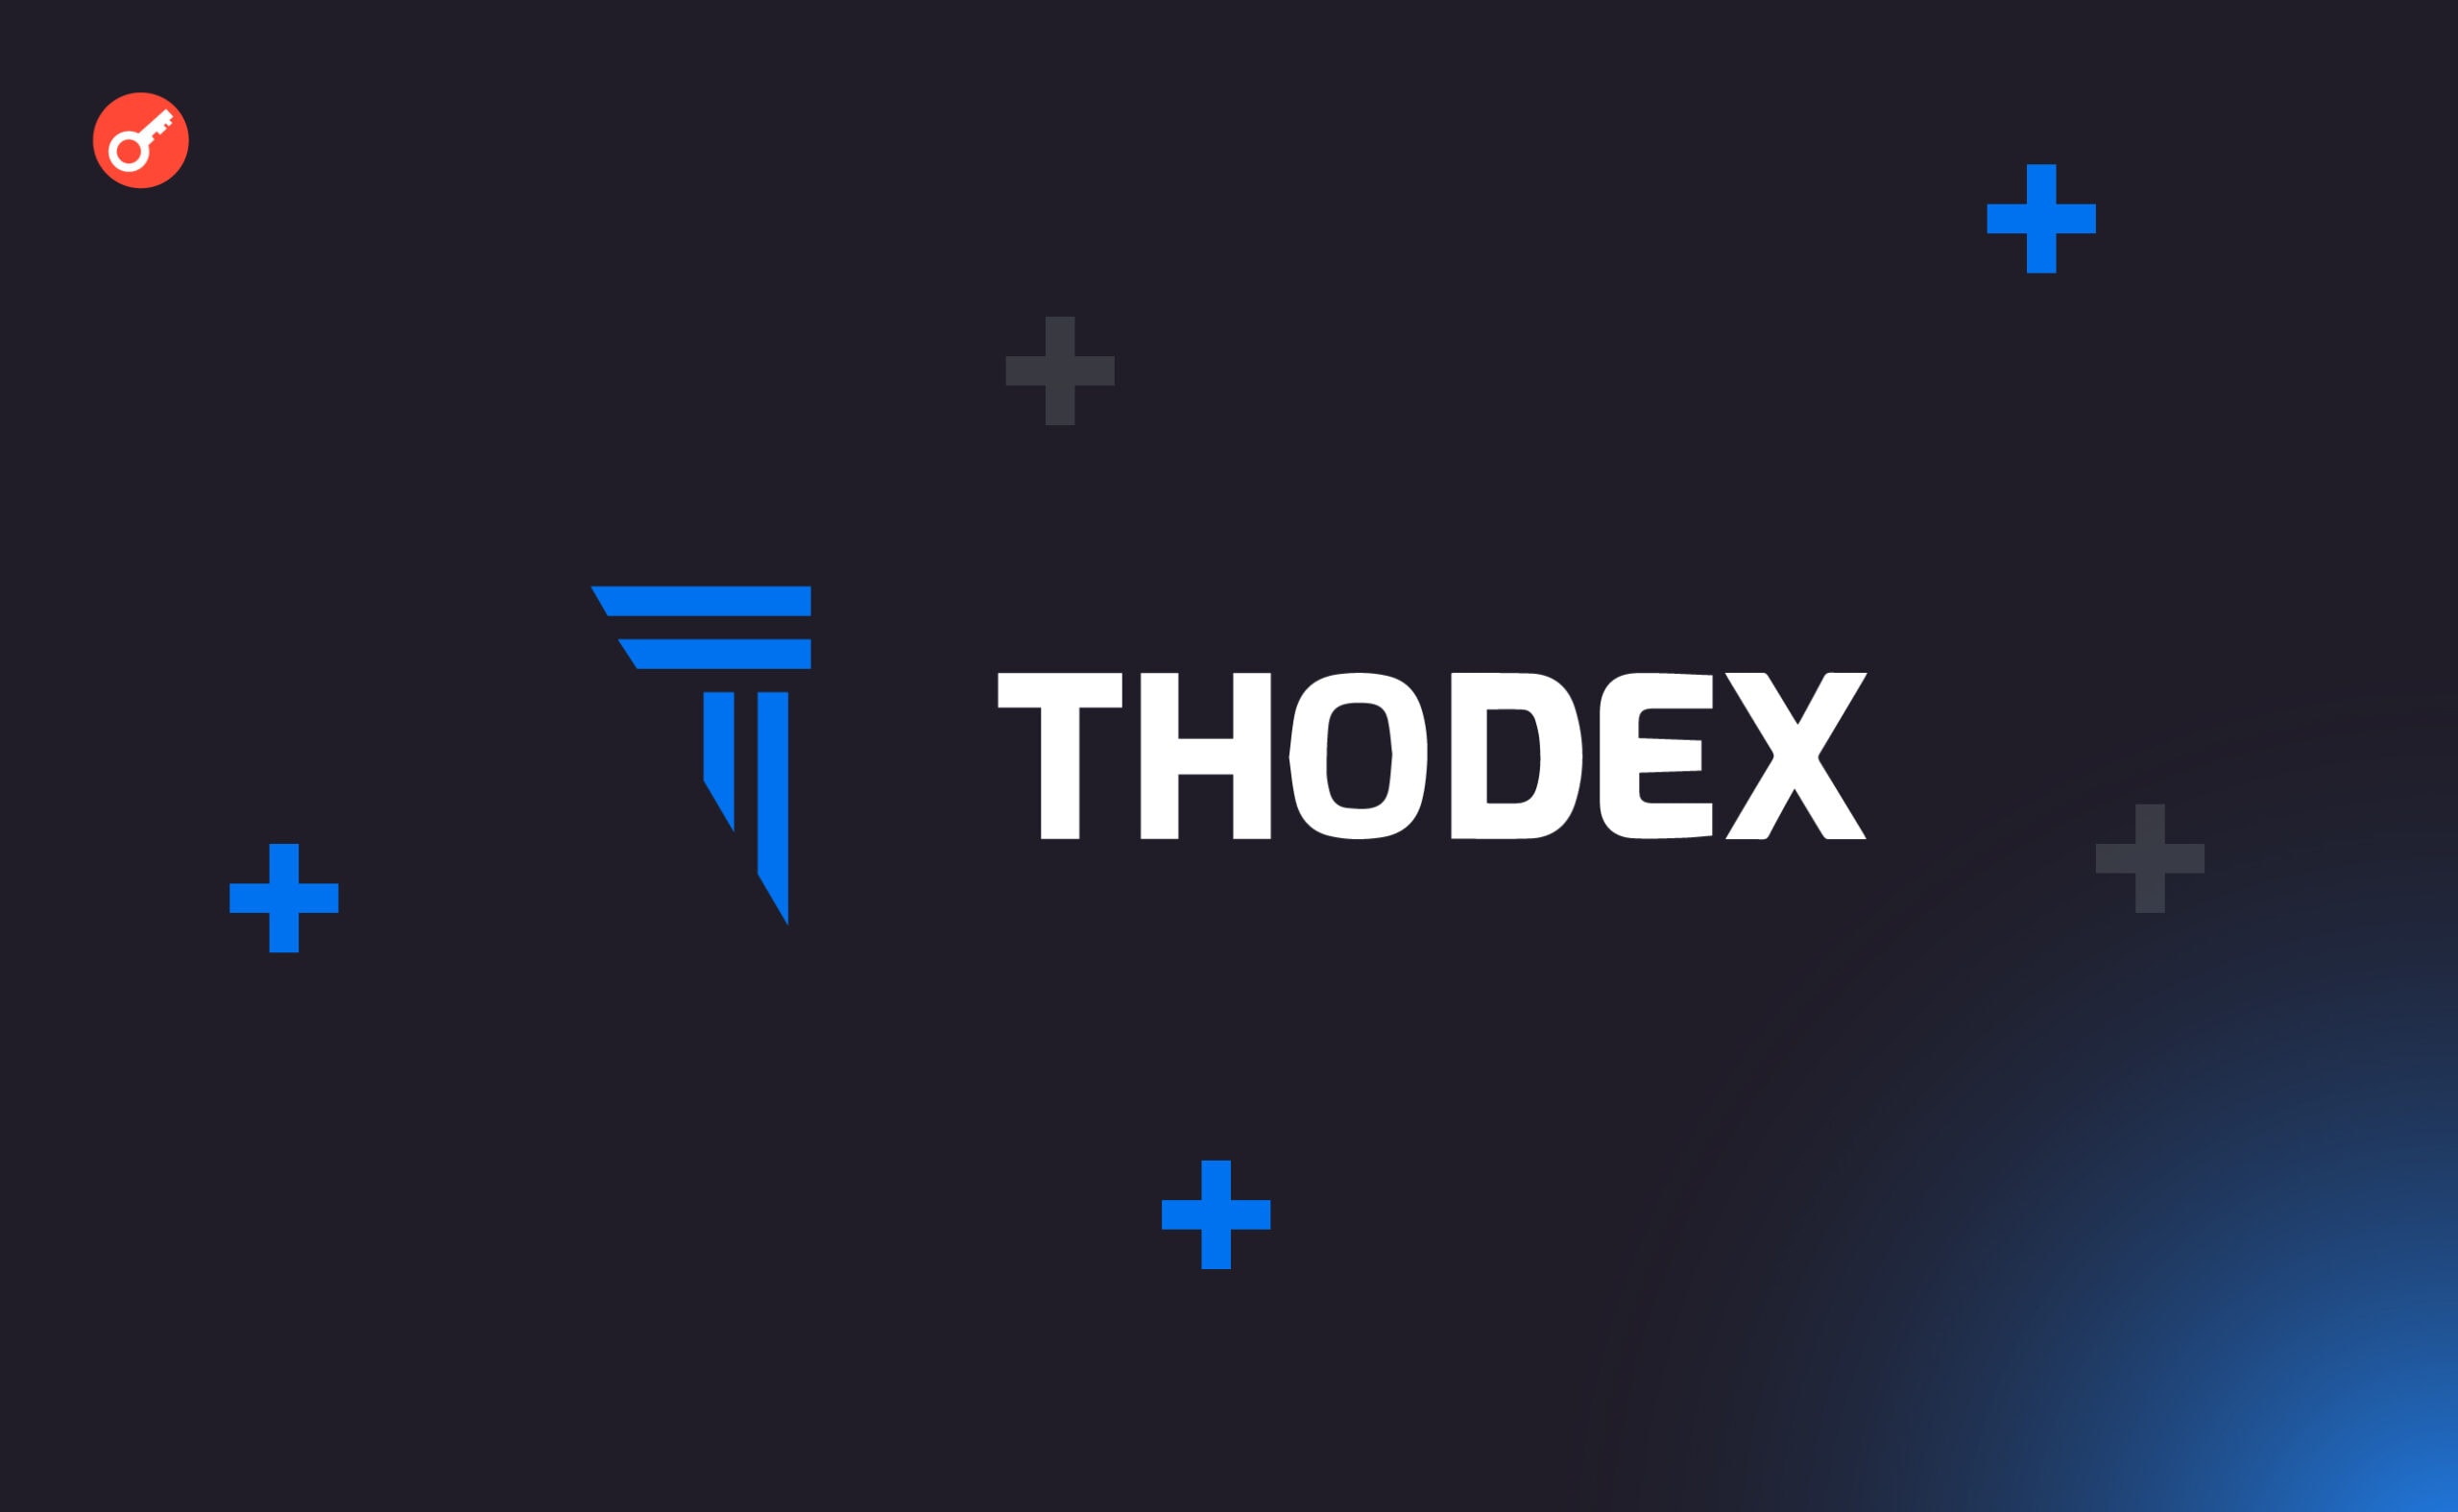 Глава Thodex заявил, что он не крипто-мошенник: его подставили. Заглавный коллаж новости.